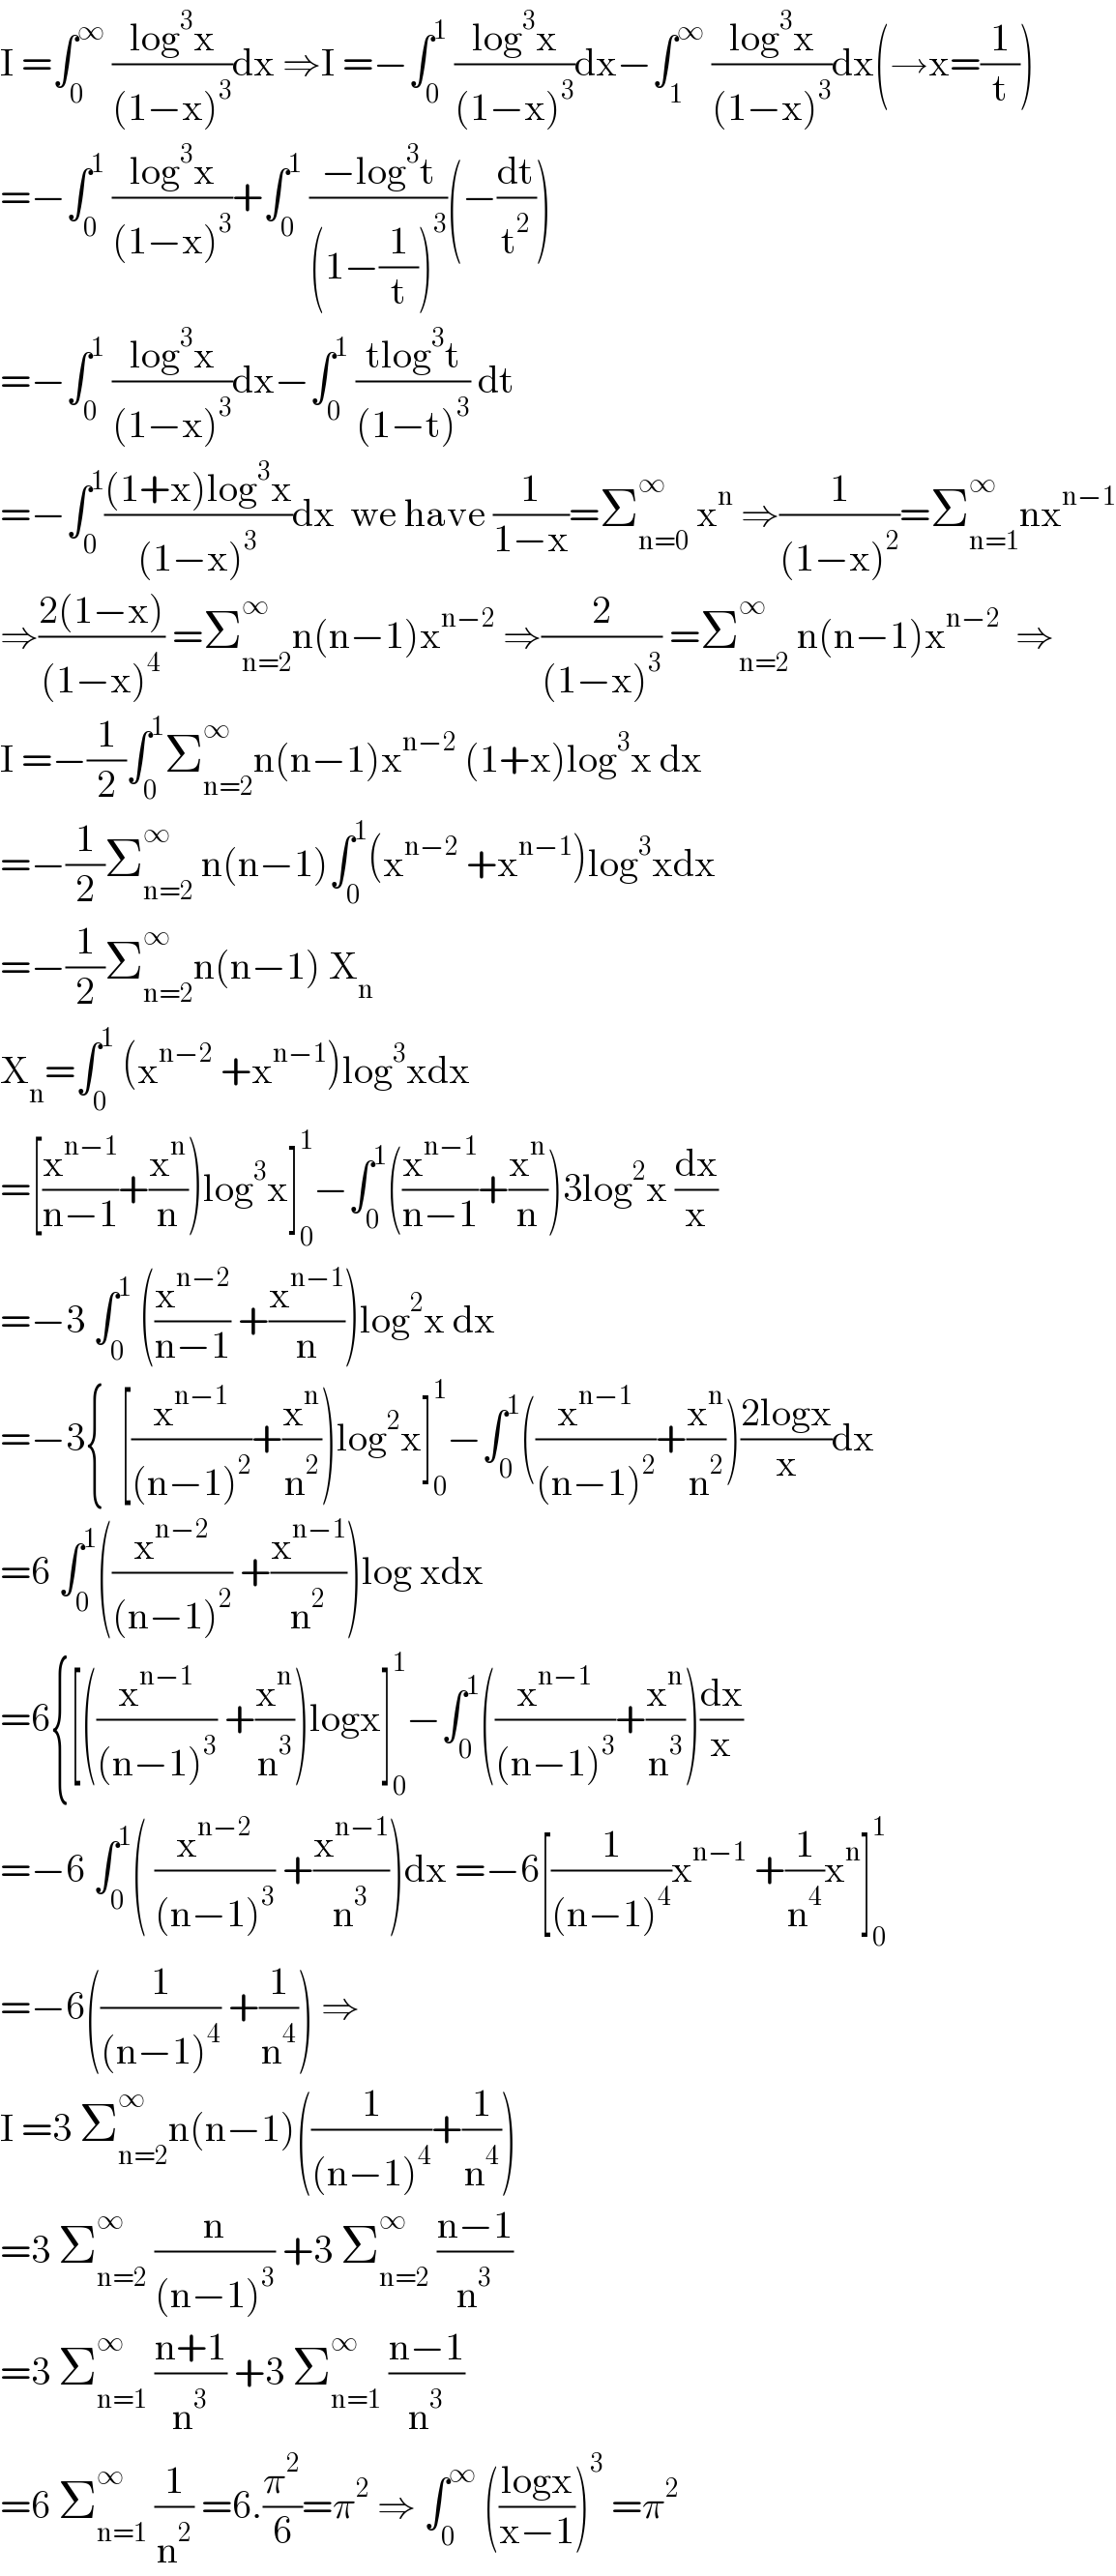 I =∫_0 ^∞  ((log^3 x)/((1−x)^3 ))dx ⇒I =−∫_0 ^1  ((log^3 x)/((1−x)^3 ))dx−∫_1 ^∞  ((log^3 x)/((1−x)^3 ))dx(→x=(1/t))  =−∫_0 ^1  ((log^3 x)/((1−x)^3 ))+∫_0 ^1  ((−log^3 t)/((1−(1/t))^3 ))(−(dt/t^2 ))  =−∫_0 ^1  ((log^3 x)/((1−x)^3 ))dx−∫_0 ^1  ((tlog^3 t)/((1−t)^3 )) dt  =−∫_0 ^1 (((1+x)log^3 x)/((1−x)^3 ))dx  we have (1/(1−x))=Σ_(n=0) ^∞  x^n  ⇒(1/((1−x)^2 ))=Σ_(n=1) ^∞ nx^(n−1)   ⇒((2(1−x))/((1−x)^4 )) =Σ_(n=2) ^∞ n(n−1)x^(n−2)  ⇒(2/((1−x)^3 )) =Σ_(n=2) ^∞  n(n−1)x^(n−2)   ⇒  I =−(1/2)∫_0 ^1 Σ_(n=2) ^∞ n(n−1)x^(n−2)  (1+x)log^3 x dx  =−(1/2)Σ_(n=2) ^∞  n(n−1)∫_0 ^1 (x^(n−2)  +x^(n−1) )log^3 xdx  =−(1/2)Σ_(n=2) ^∞ n(n−1) X_n   X_n =∫_0 ^1  (x^(n−2)  +x^(n−1) )log^3 xdx  =[(x^(n−1) /(n−1))+(x^n /n))log^3 x]_0 ^1 −∫_0 ^1 ((x^(n−1) /(n−1))+(x^n /n))3log^2 x (dx/x)  =−3 ∫_0 ^1  ((x^(n−2) /(n−1)) +(x^(n−1) /n))log^2 x dx  =−3{  [(x^(n−1) /((n−1)^2 ))+(x^n /n^2 ))log^2 x]_0 ^1 −∫_0 ^1 ((x^(n−1) /((n−1)^2 ))+(x^n /n^2 ))((2logx)/x)dx  =6 ∫_0 ^1 ((x^(n−2) /((n−1)^2 )) +(x^(n−1) /n^2 ))log xdx  =6{[((x^(n−1) /((n−1)^3 )) +(x^n /n^3 ))logx]_0 ^1 −∫_0 ^1 ((x^(n−1) /((n−1)^3 ))+(x^n /n^3 ))(dx/x)  =−6 ∫_0 ^1 ( (x^(n−2) /((n−1)^3 )) +(x^(n−1) /n^3 ))dx =−6[(1/((n−1)^4 ))x^(n−1)  +(1/n^4 )x^n ]_0 ^1   =−6((1/((n−1)^4 )) +(1/n^4 )) ⇒  I =3 Σ_(n=2) ^∞ n(n−1)((1/((n−1)^4 ))+(1/n^4 ))  =3 Σ_(n=2) ^∞  (n/((n−1)^3 )) +3 Σ_(n=2) ^∞  ((n−1)/n^3 )  =3 Σ_(n=1) ^∞  ((n+1)/n^3 ) +3 Σ_(n=1) ^∞  ((n−1)/n^3 )  =6 Σ_(n=1) ^∞  (1/n^2 ) =6.(π^2 /6)=π^2  ⇒ ∫_0 ^∞  (((logx)/(x−1)))^3  =π^2   